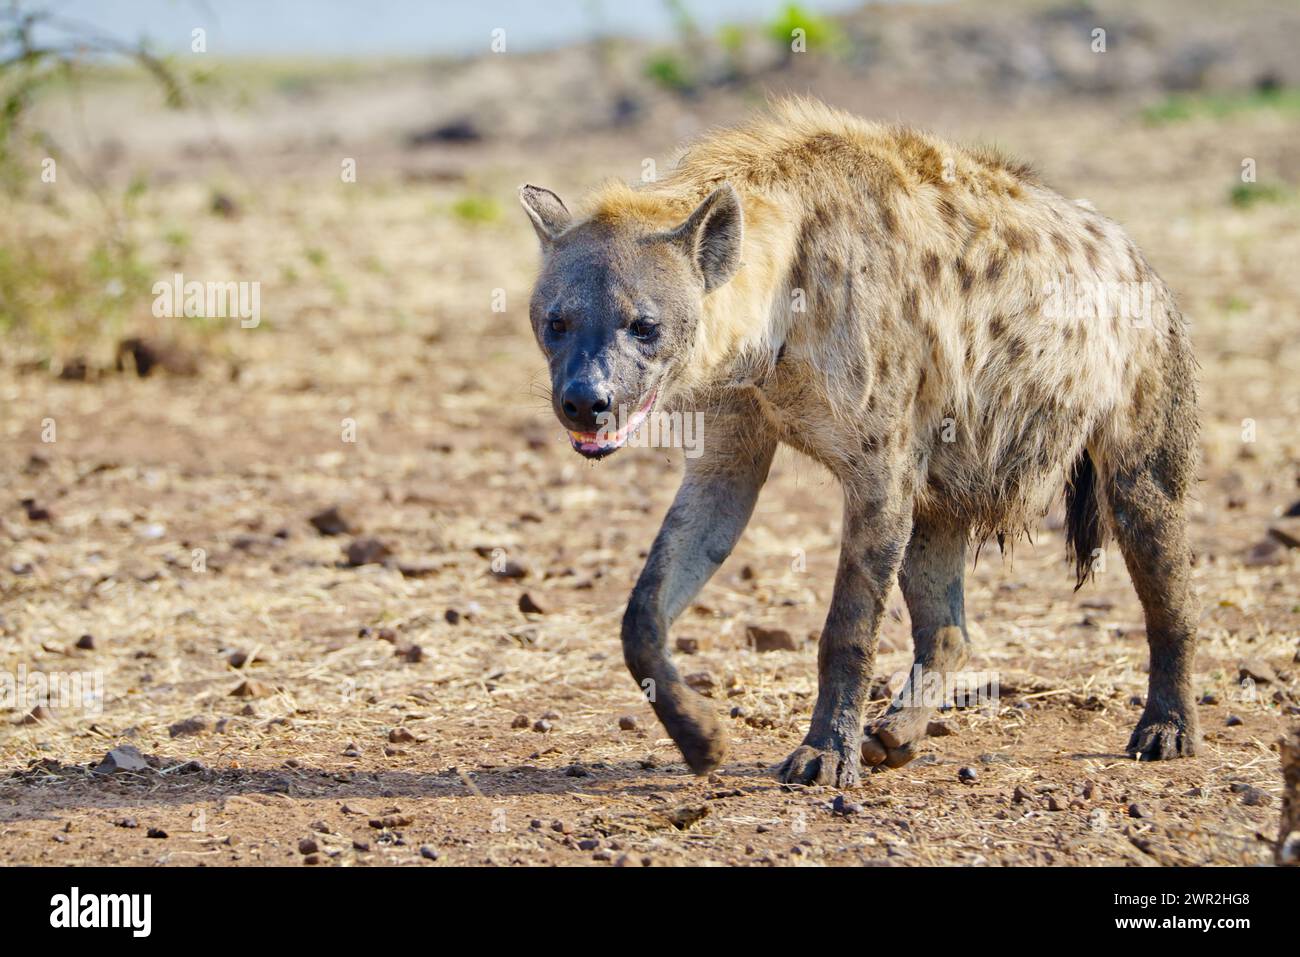 Ich habe Hyena gesehen, die durch die Ebenen Afrikas lief Stockfoto